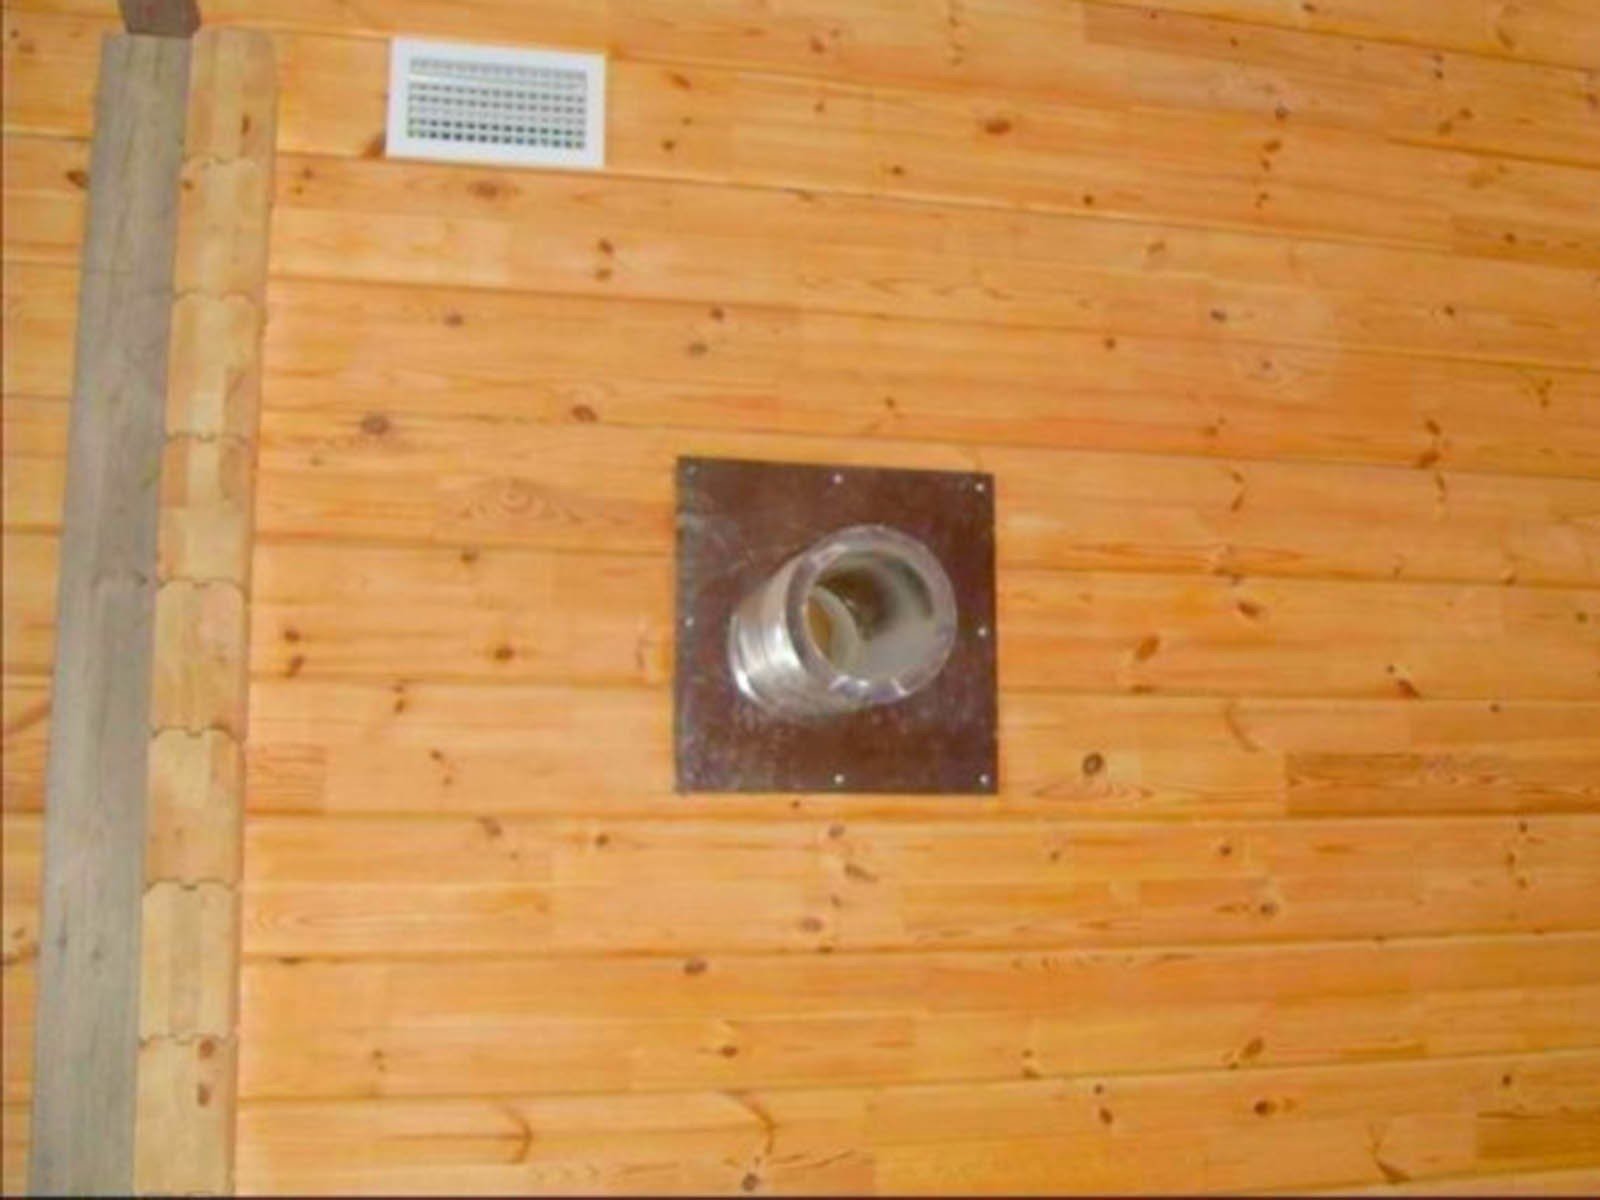 Вентиляция в деревянном доме